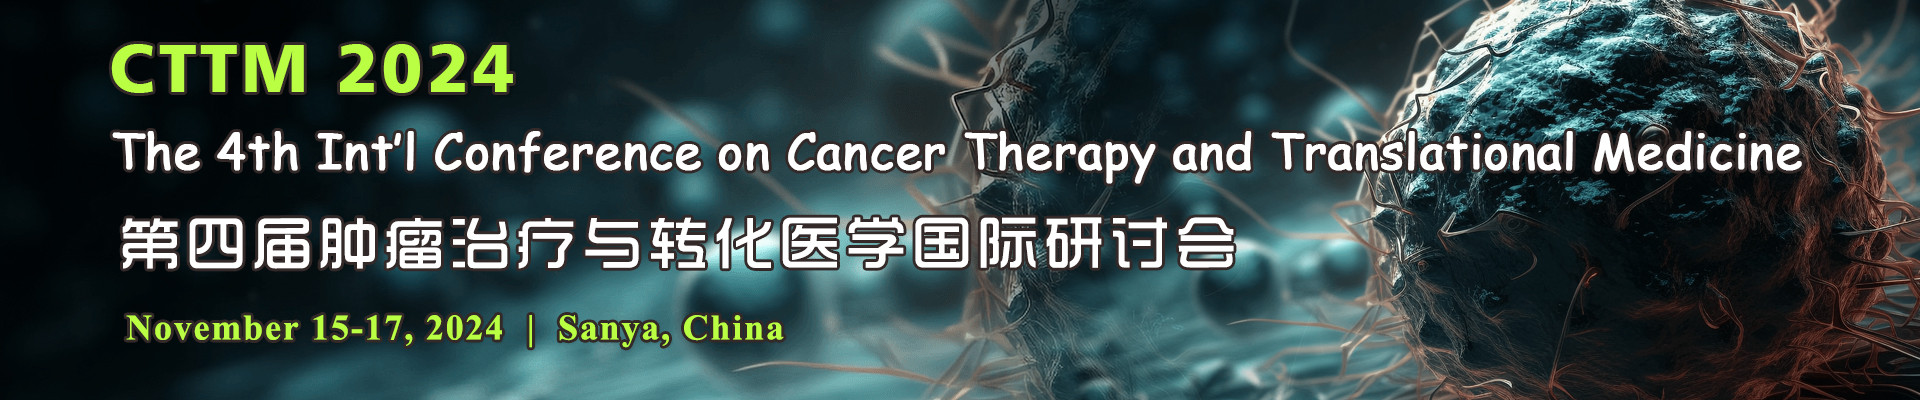 第四届肿瘤治疗与转化医学国际研讨会(CTTM 2024)